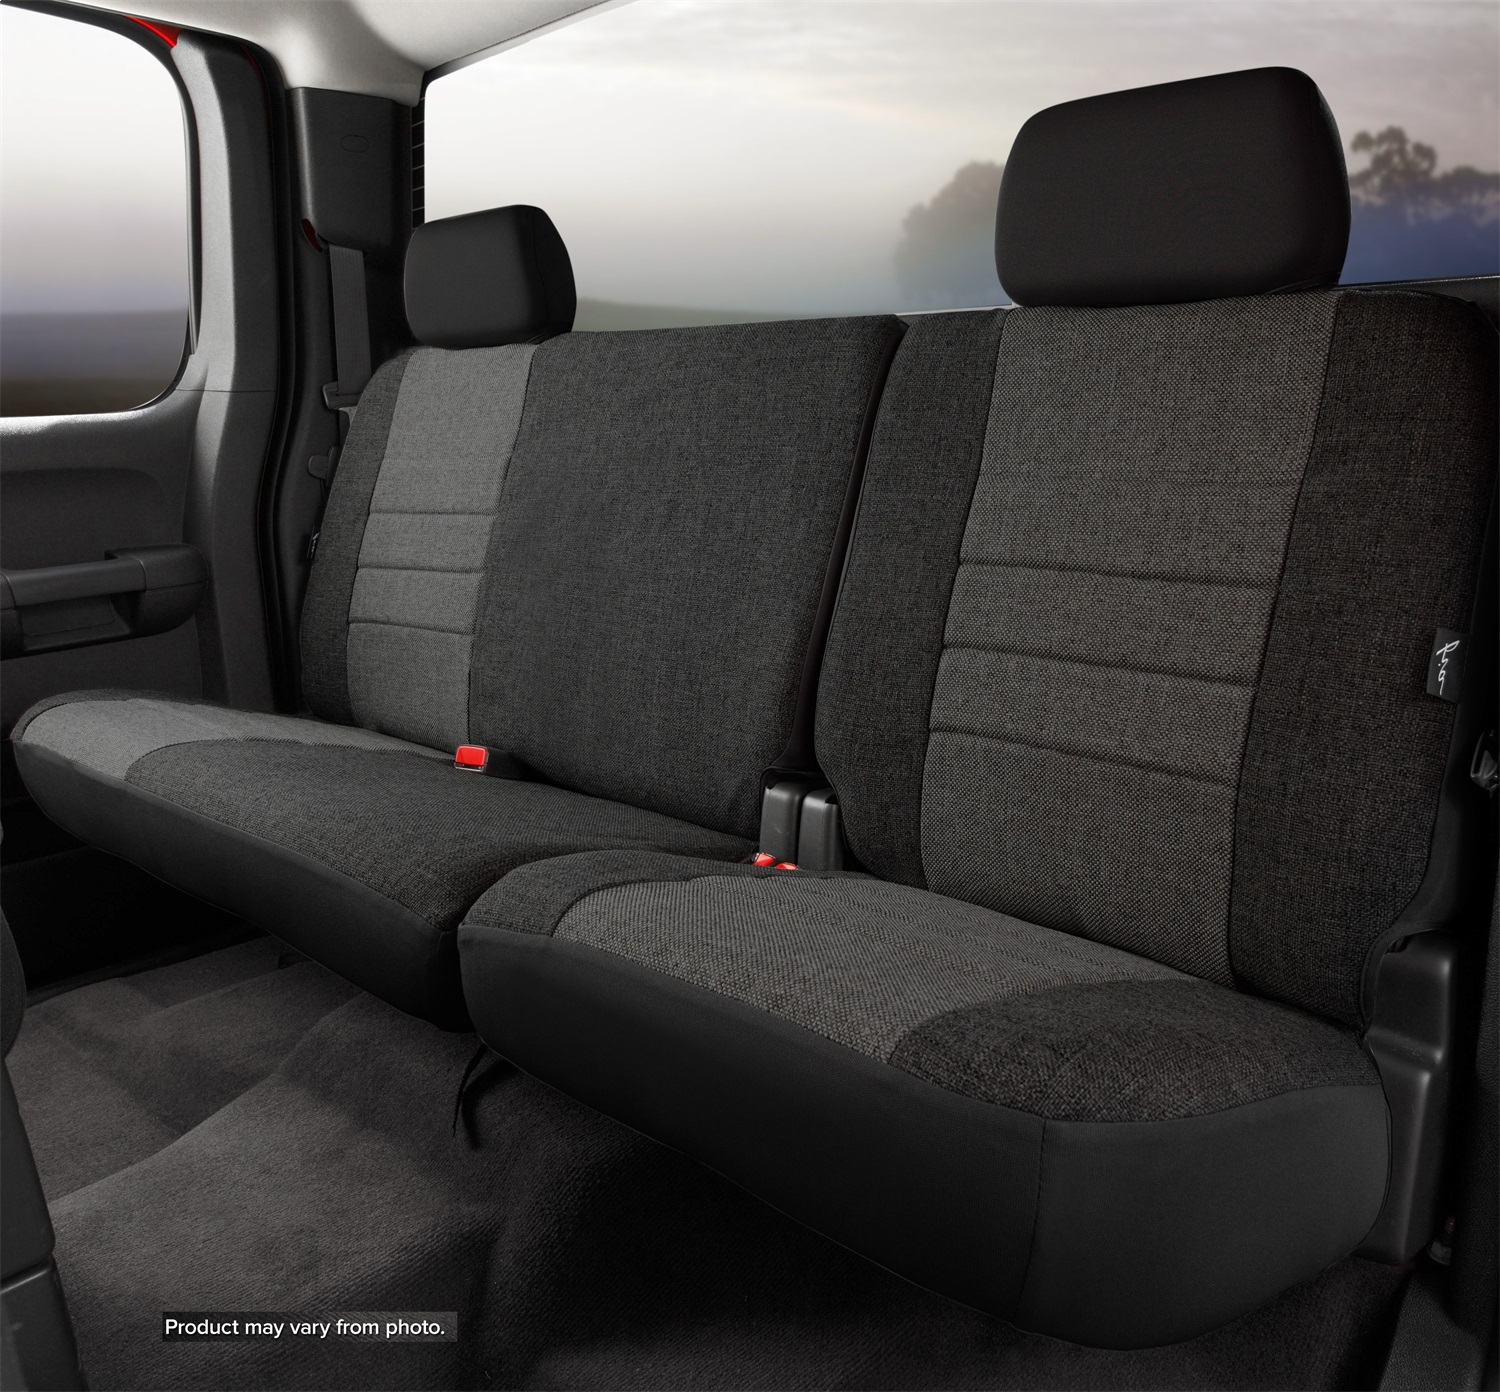 Fia Fia OE32-75CHARC Oe Custom Seat Cover Fits 13-15 Wrangler (JK)